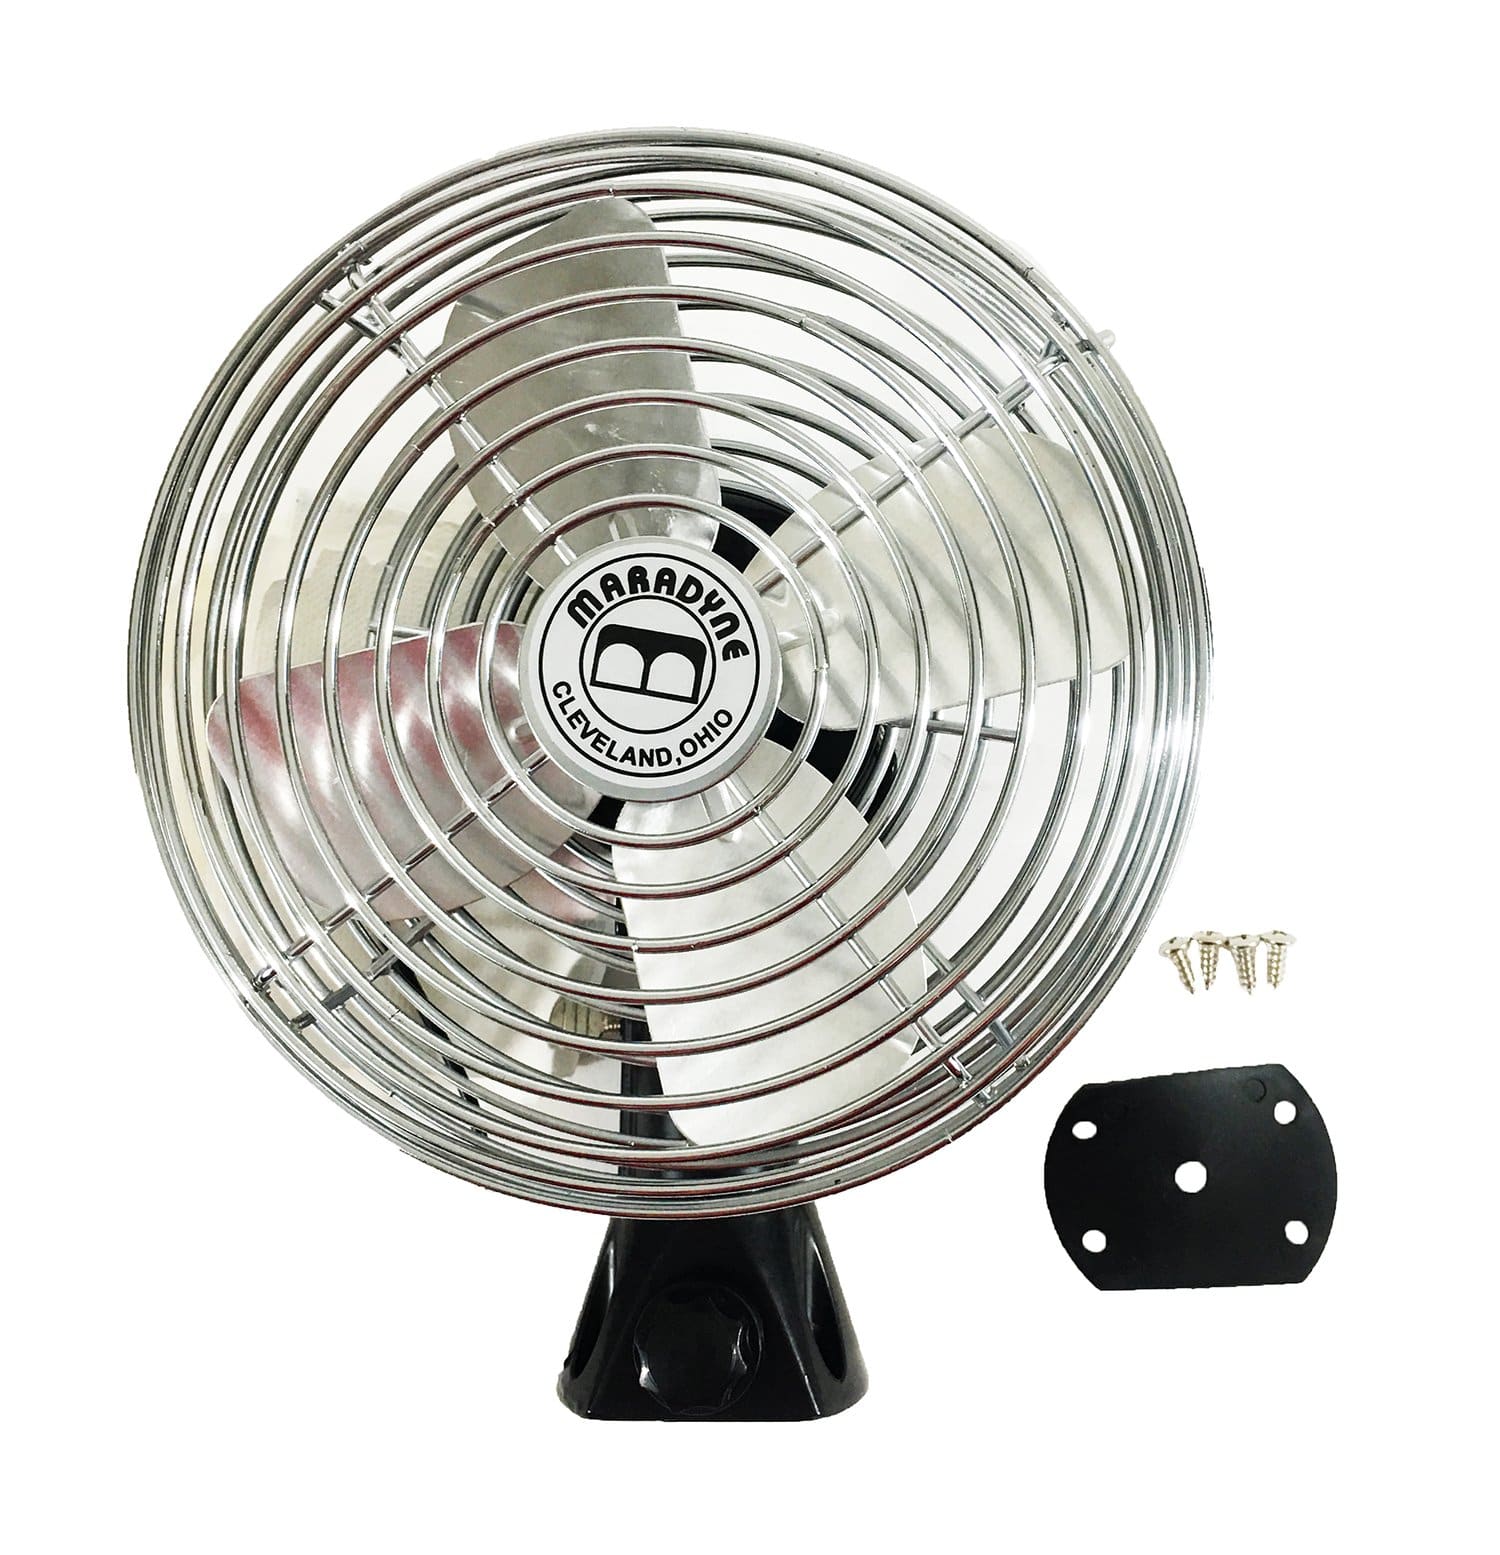 Maradyne Mobile 300012 Ventilation/Defrost Fan